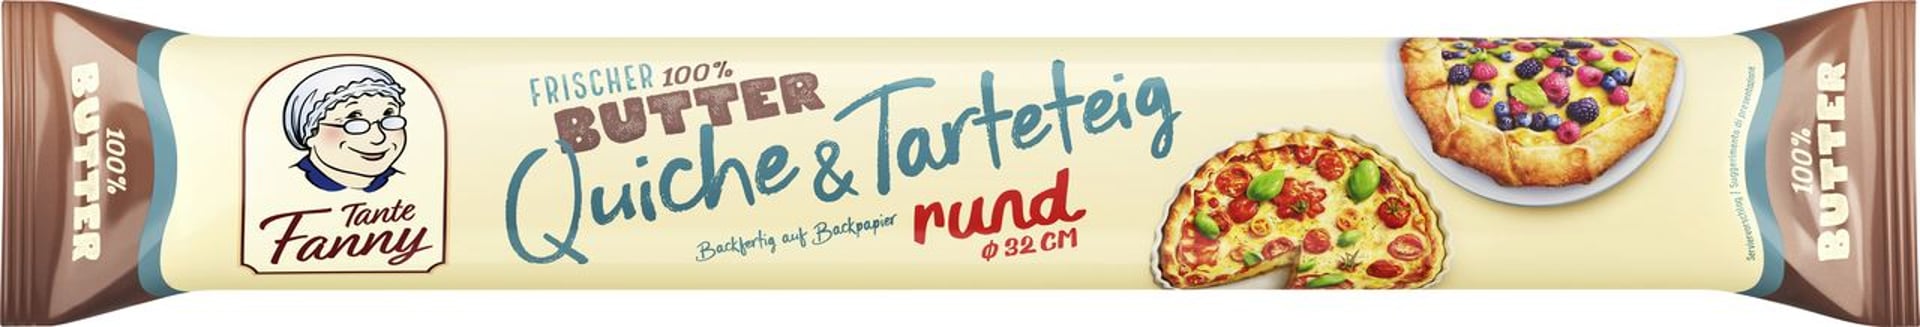 Tante Fanny - Frischer Butter-Quicheteig gekühlt - 280 g Packung